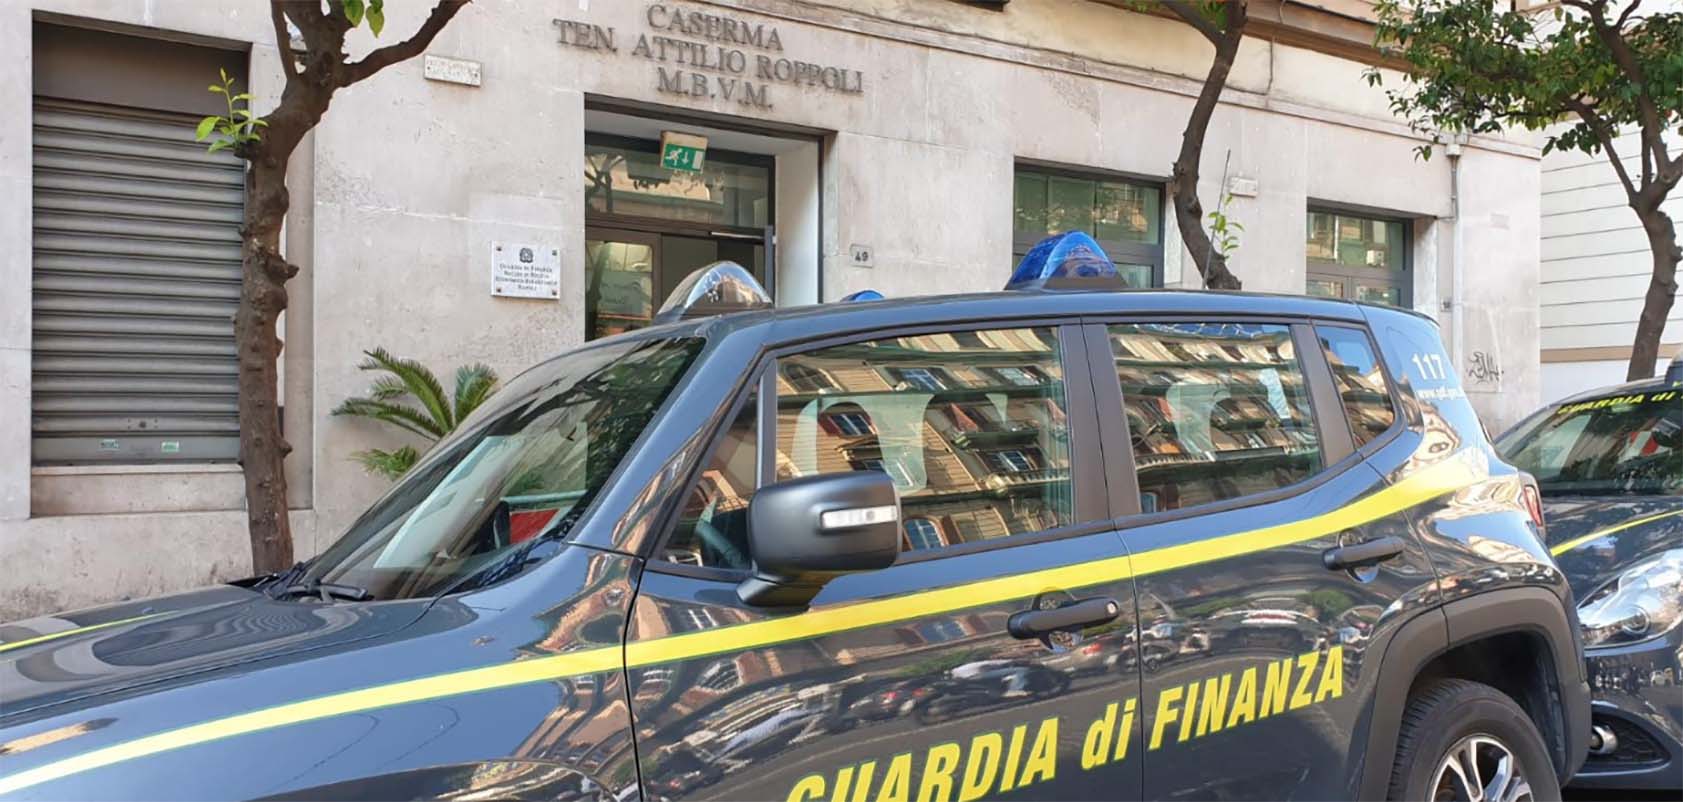 False compensazioni Tributarie: 6 arresti tra Napoli e Caserta